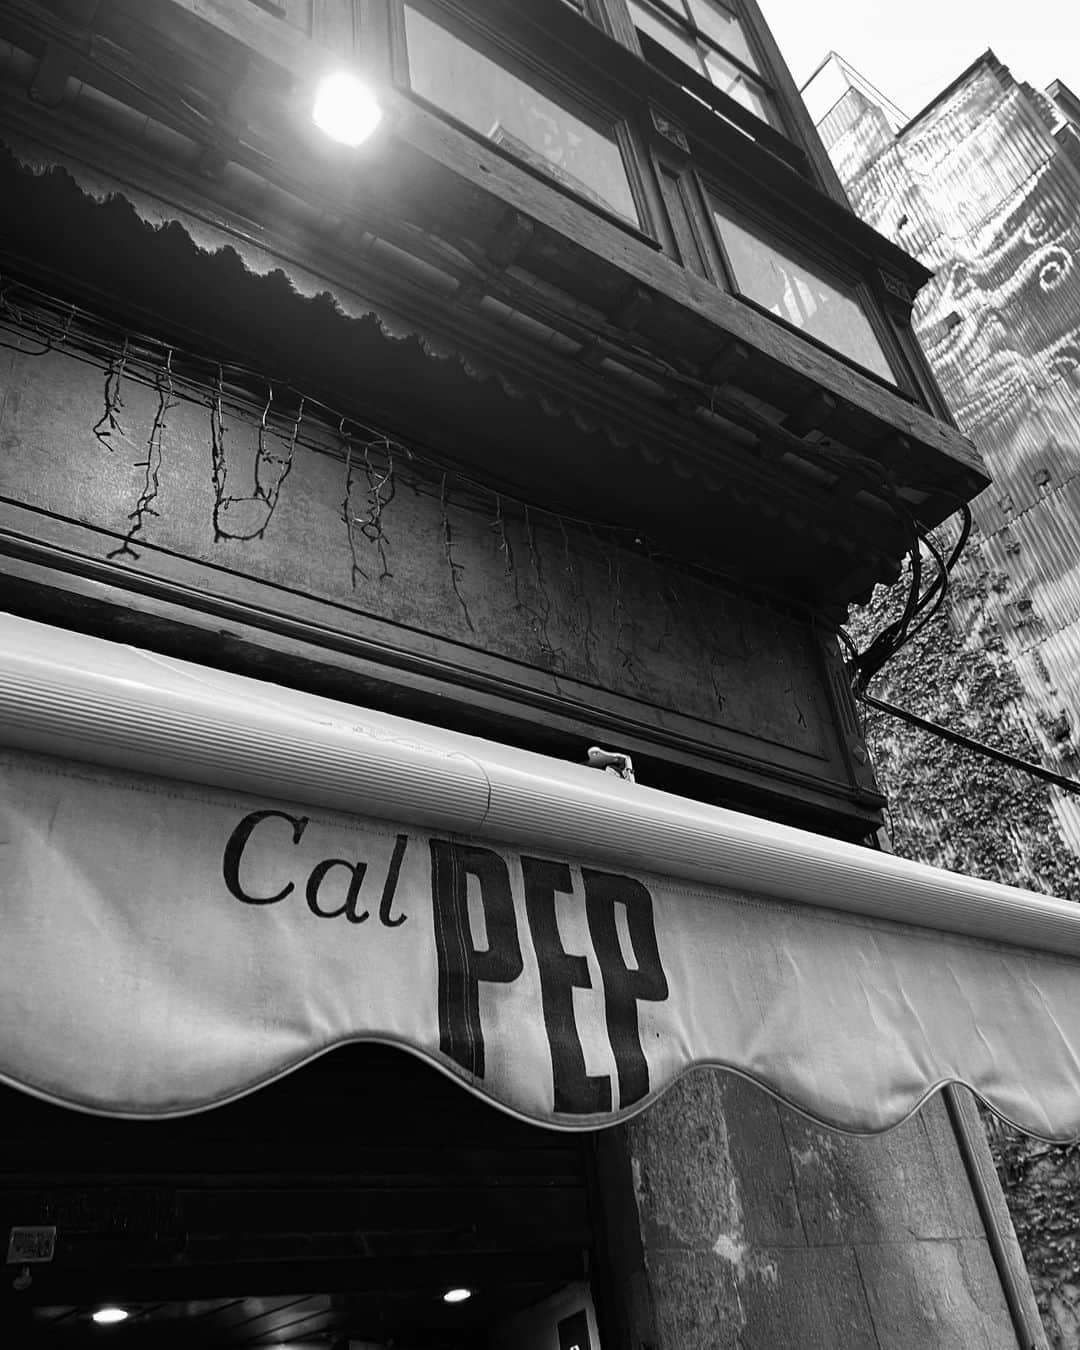 雨宮みずきのインスタグラム：「スペイン料理大好き🤤🍳 バルセロナでオススメのタパス屋さんを2店舗紹介するよ🐙🦑🇪🇸 ミシュランレストランにも行ったけど 私はここがタイプすぎた🥹💕 どの料理も美味しくて、どれだけ食べても飲んでも本当に安くてビックリ！ 並んでも食べに行きたい大人気な理由がわかる！！  @calpepbcn は45分くらい並んで入れたよ！ 飲みながら待てるから私みたいに酔っ払いにならないように注意してね🤣🥴笑 （実はキャリーケースが届かないハプニングがあって、盗まれたんだと諦めて半べそかいてた😭😢🥹無事に２日目に届いて良かった😭） 普段はどれだけ飲んでも顔は赤くならないのに何故か真っ赤っか😂🐙  2店舗目は @tapas24carlesabellan イベリコ生ハム、モッツァレラ、トリュフの有名なビキニ（トースト）が絶品すぎた🥹🥓🥪🧀🍄🐟🍅  #Barcelona #calpep #tapas24carlesabellan」